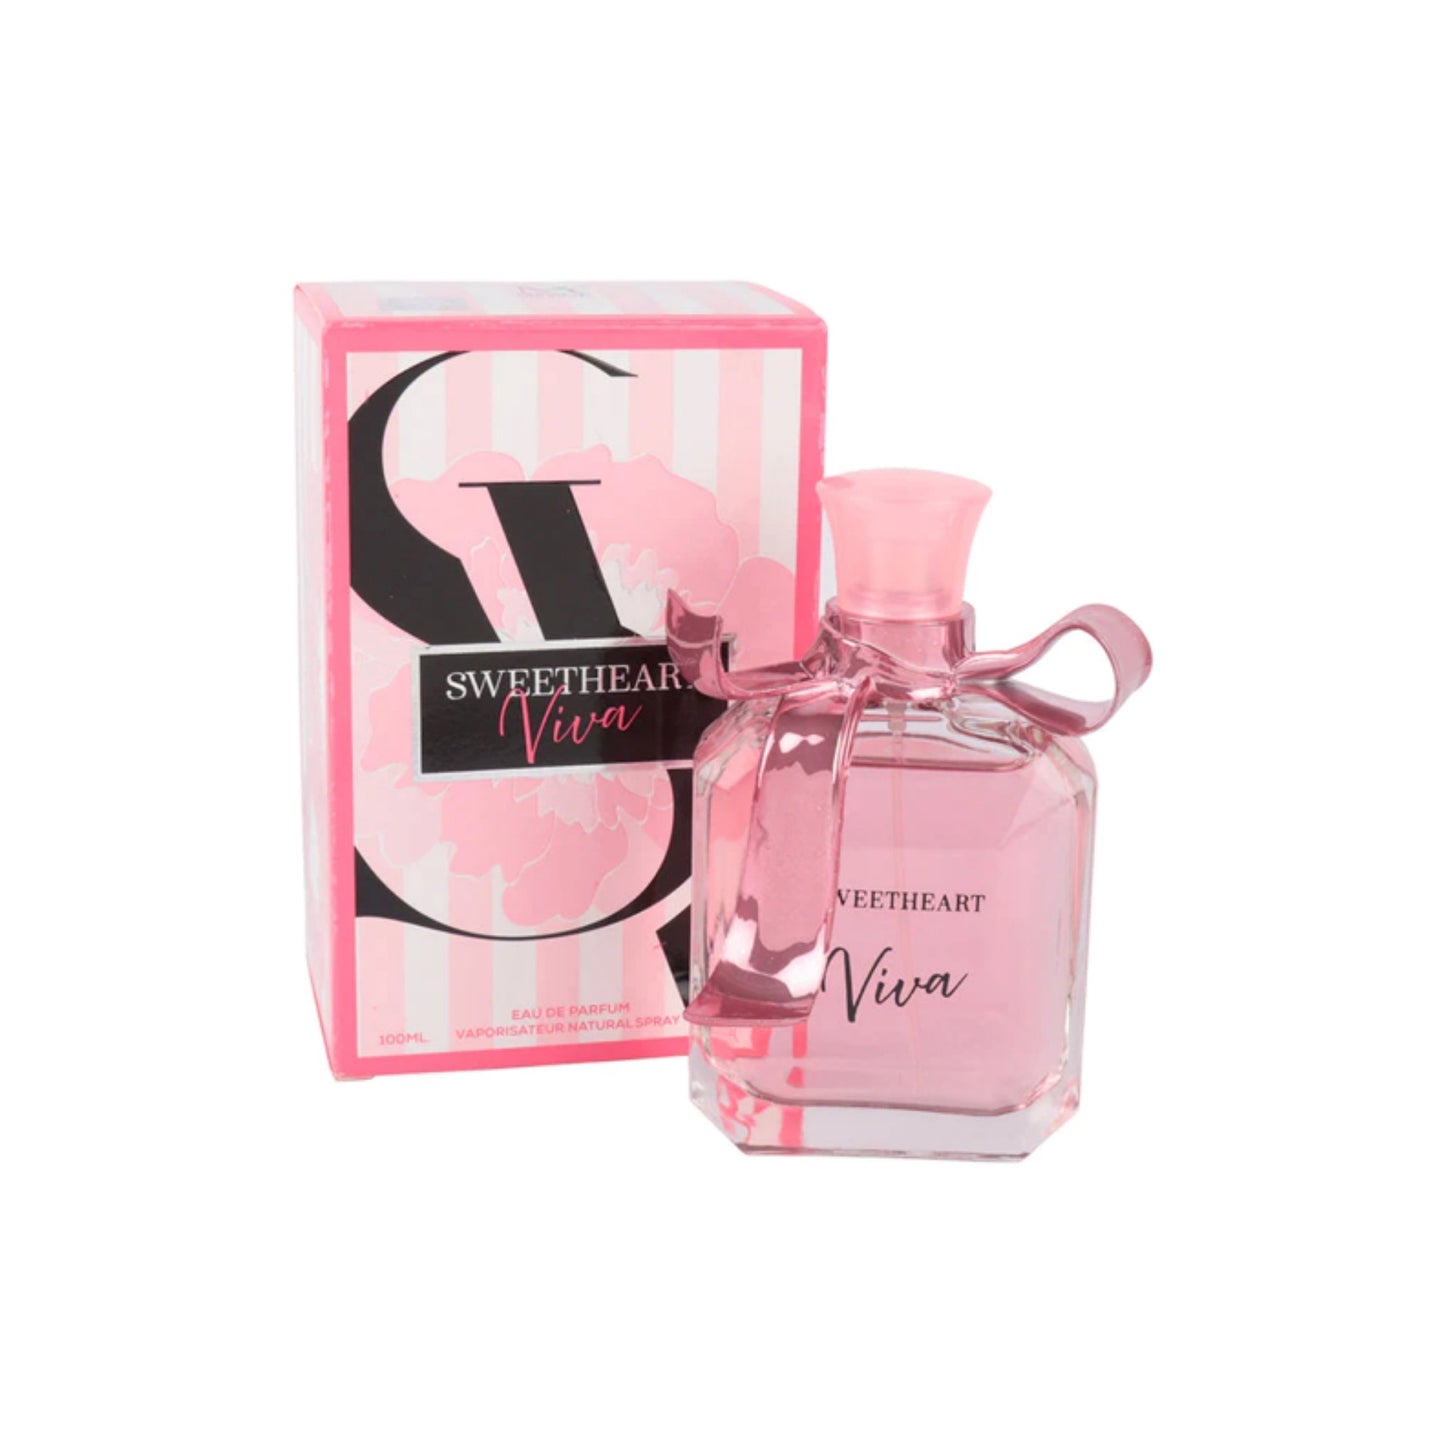 Sweetheart Viva |Perfume for women |100 ml